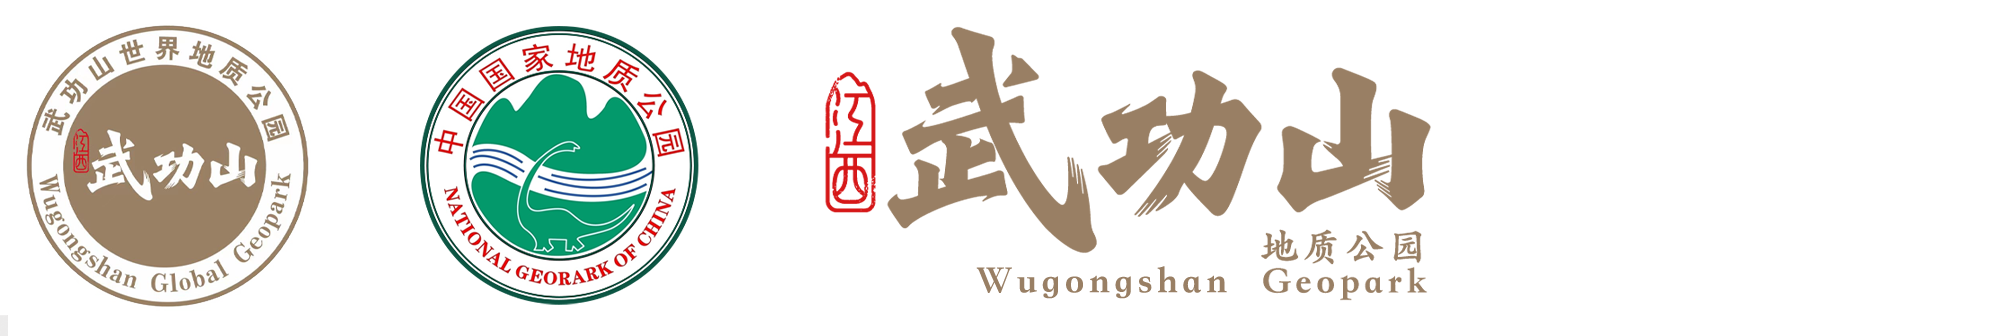 Wugongshan Aspiring UNESCO Global Geopark